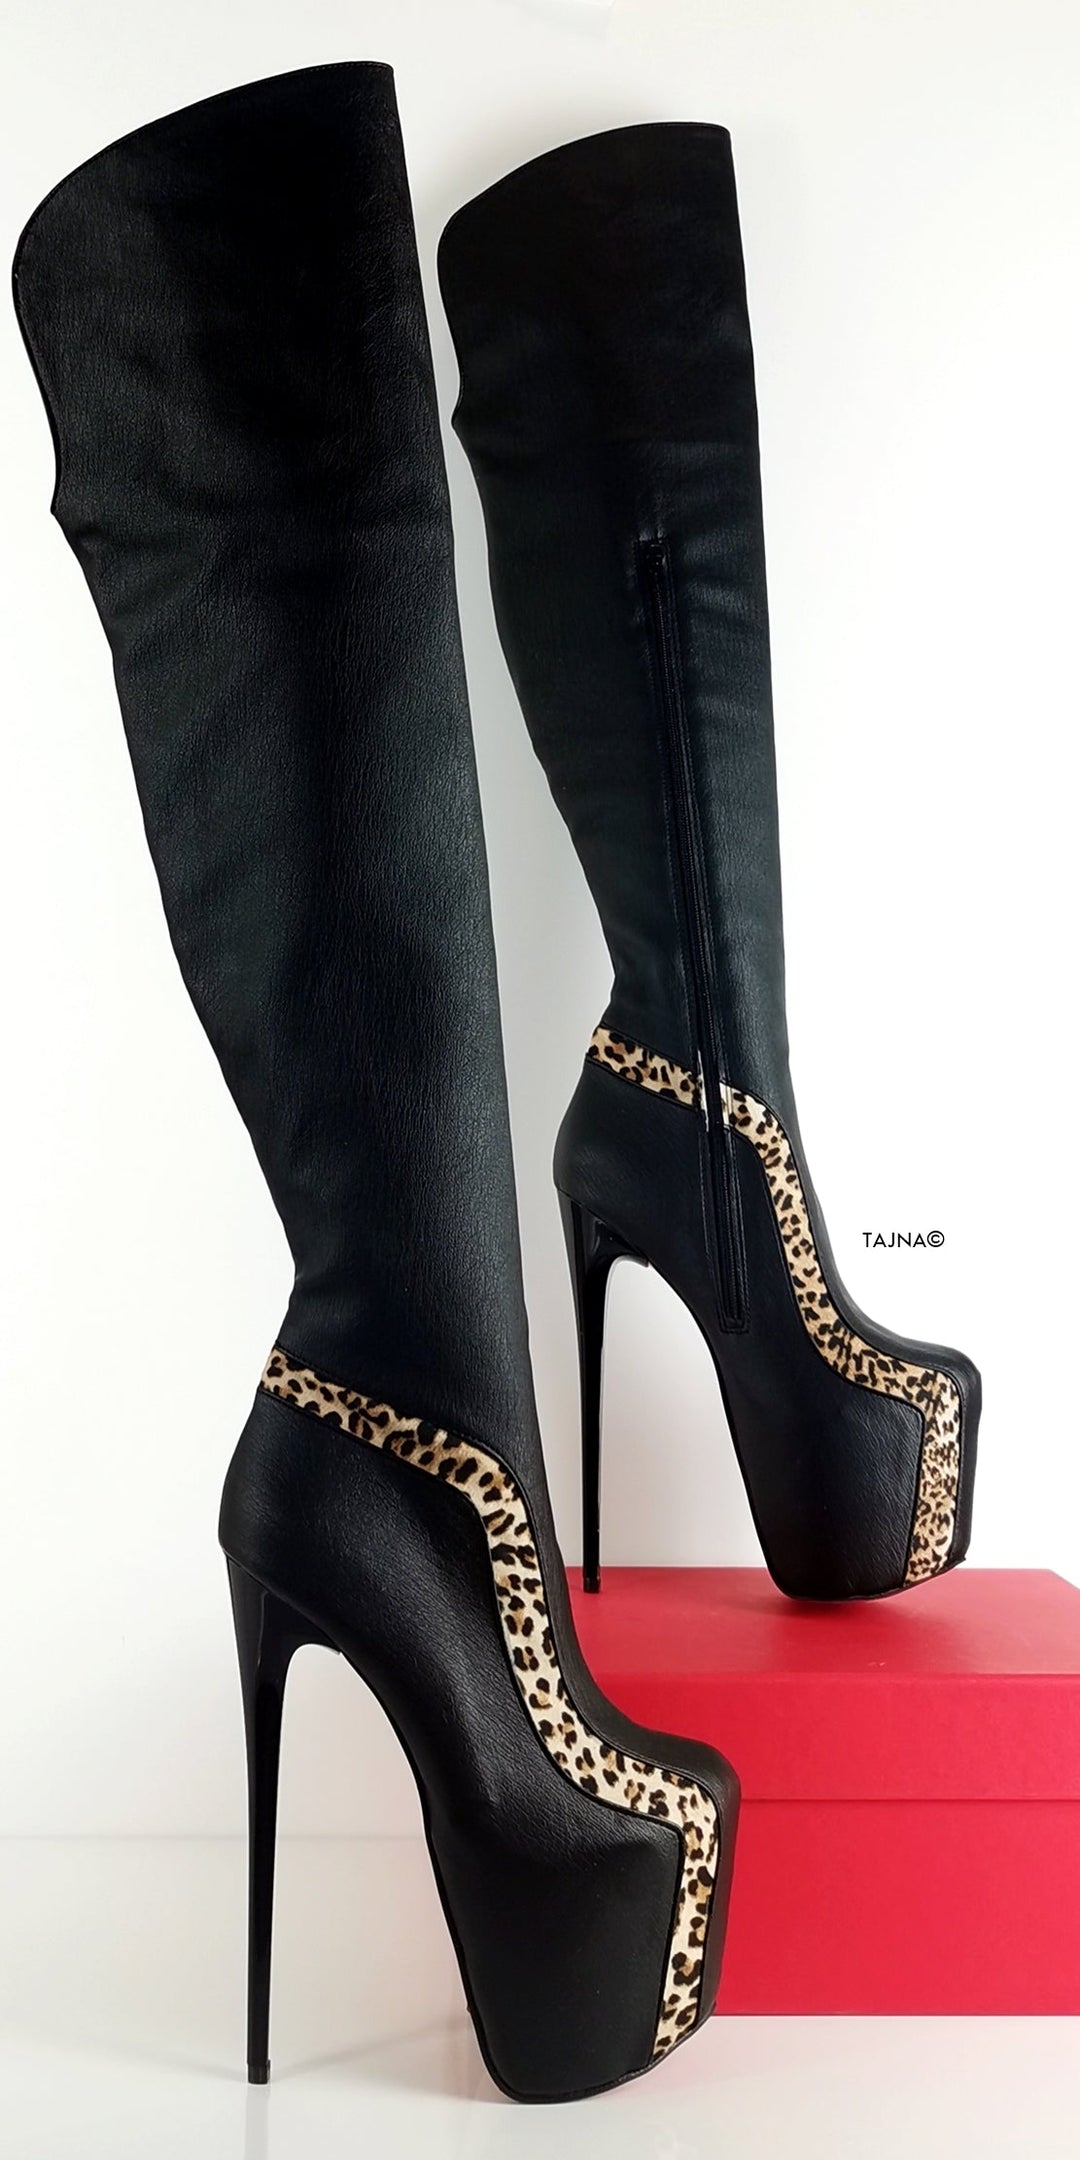 Black Leopard Detail Knee High Boots - Tajna Club